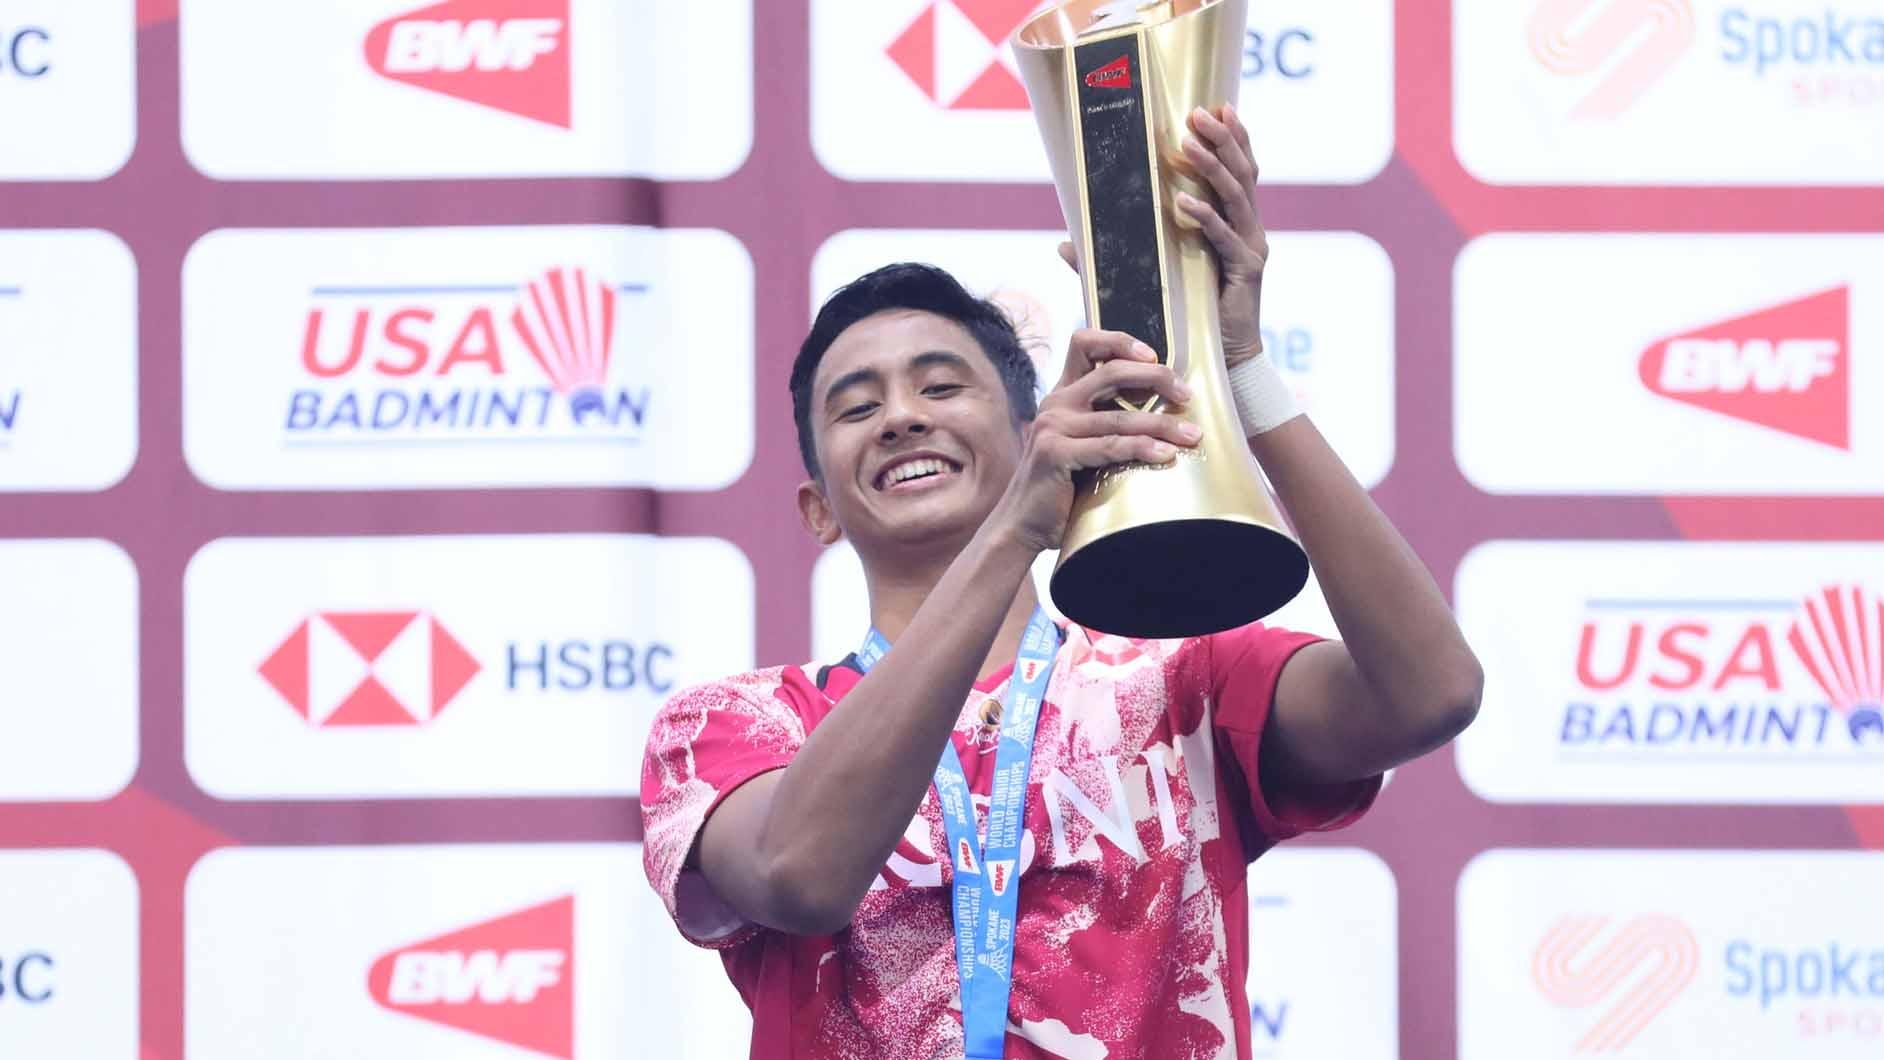 Mantan pelatih Taufik Hidayat, Mulyo Handoyo menyebutkan, Alwi Farhan sebagai aset masa depan Indonesia, dan berpotensi meraih emas Olimpiade 2028. (Foto: PBSI) - INDOSPORT